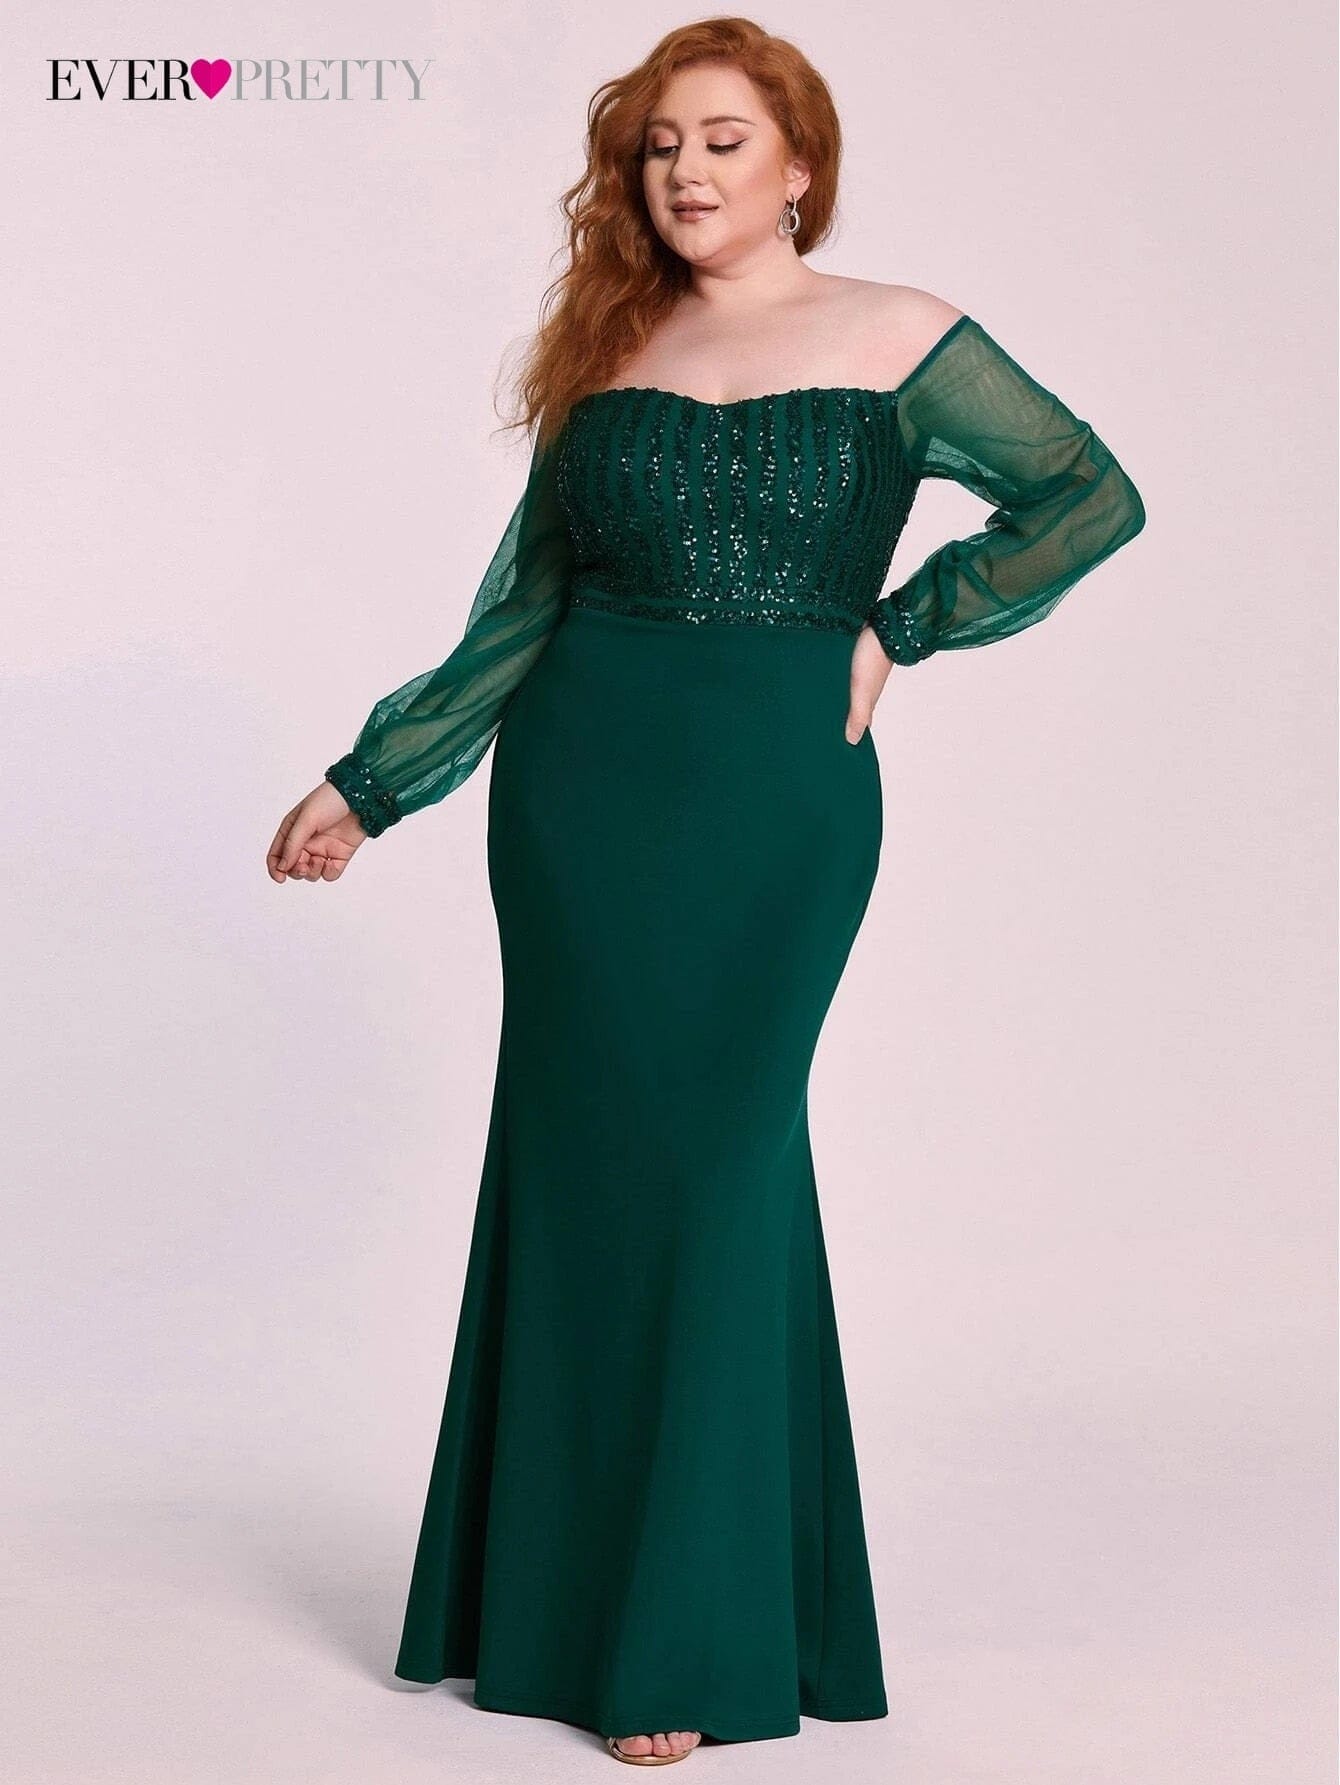 PlSize Elegant Evening Dresses Long Floor-Length Straight Full Sleeve Dress